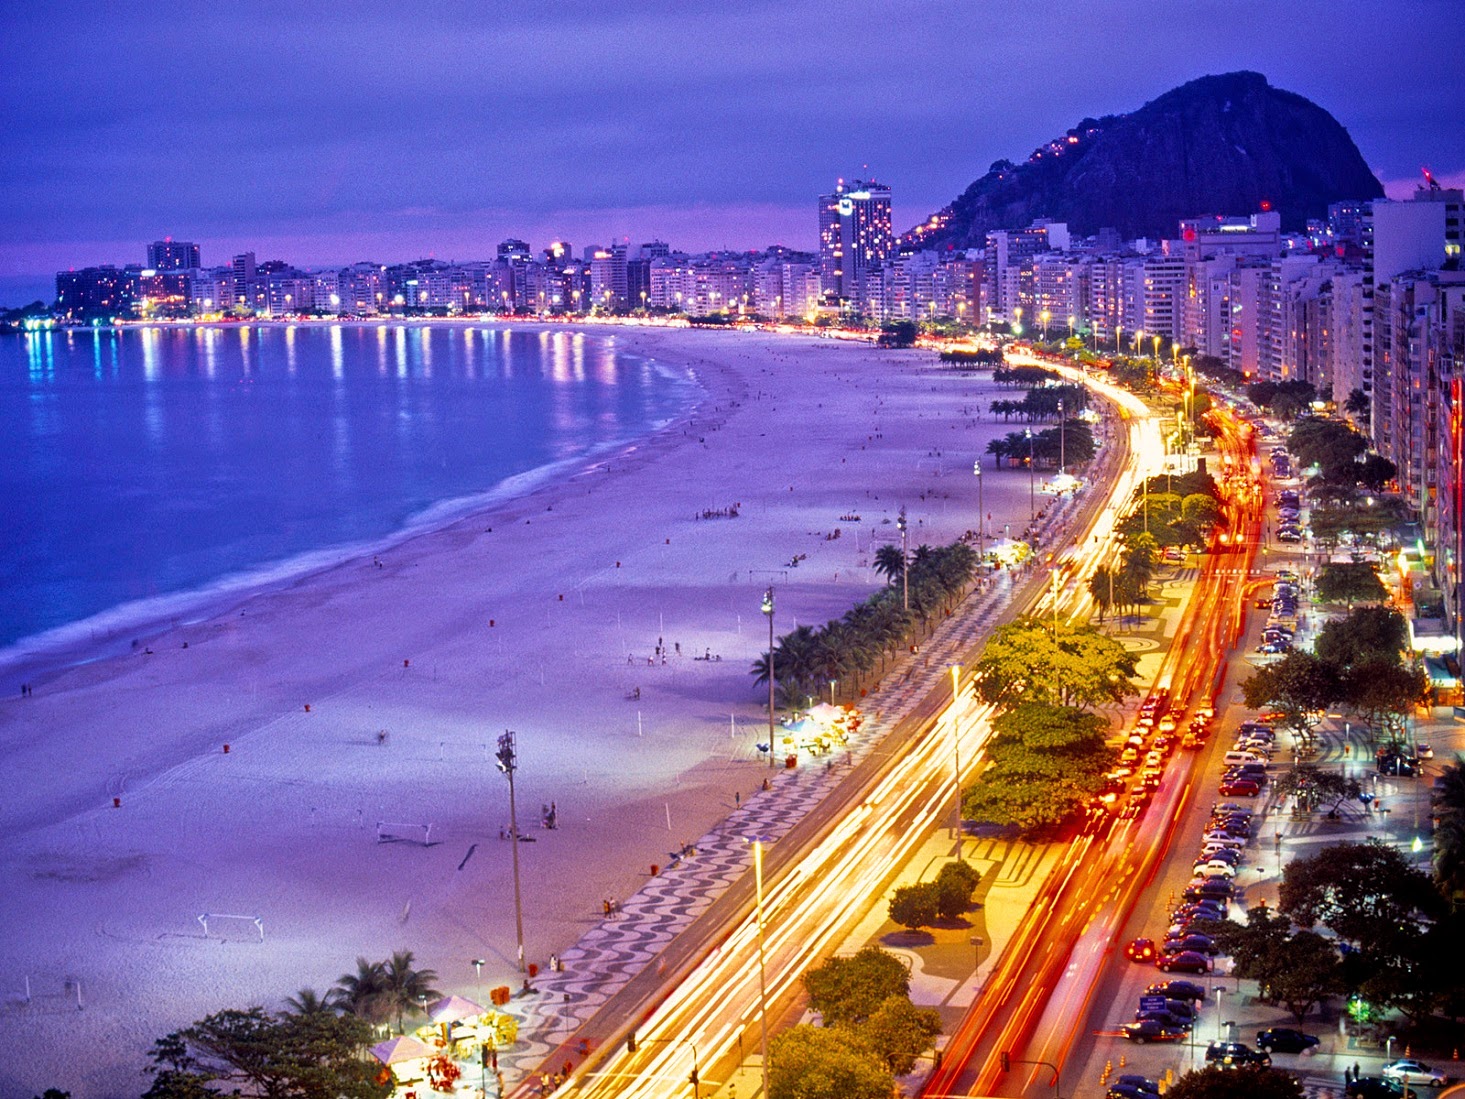 Rio de Janeiro Brazil - Places YOU want to visit